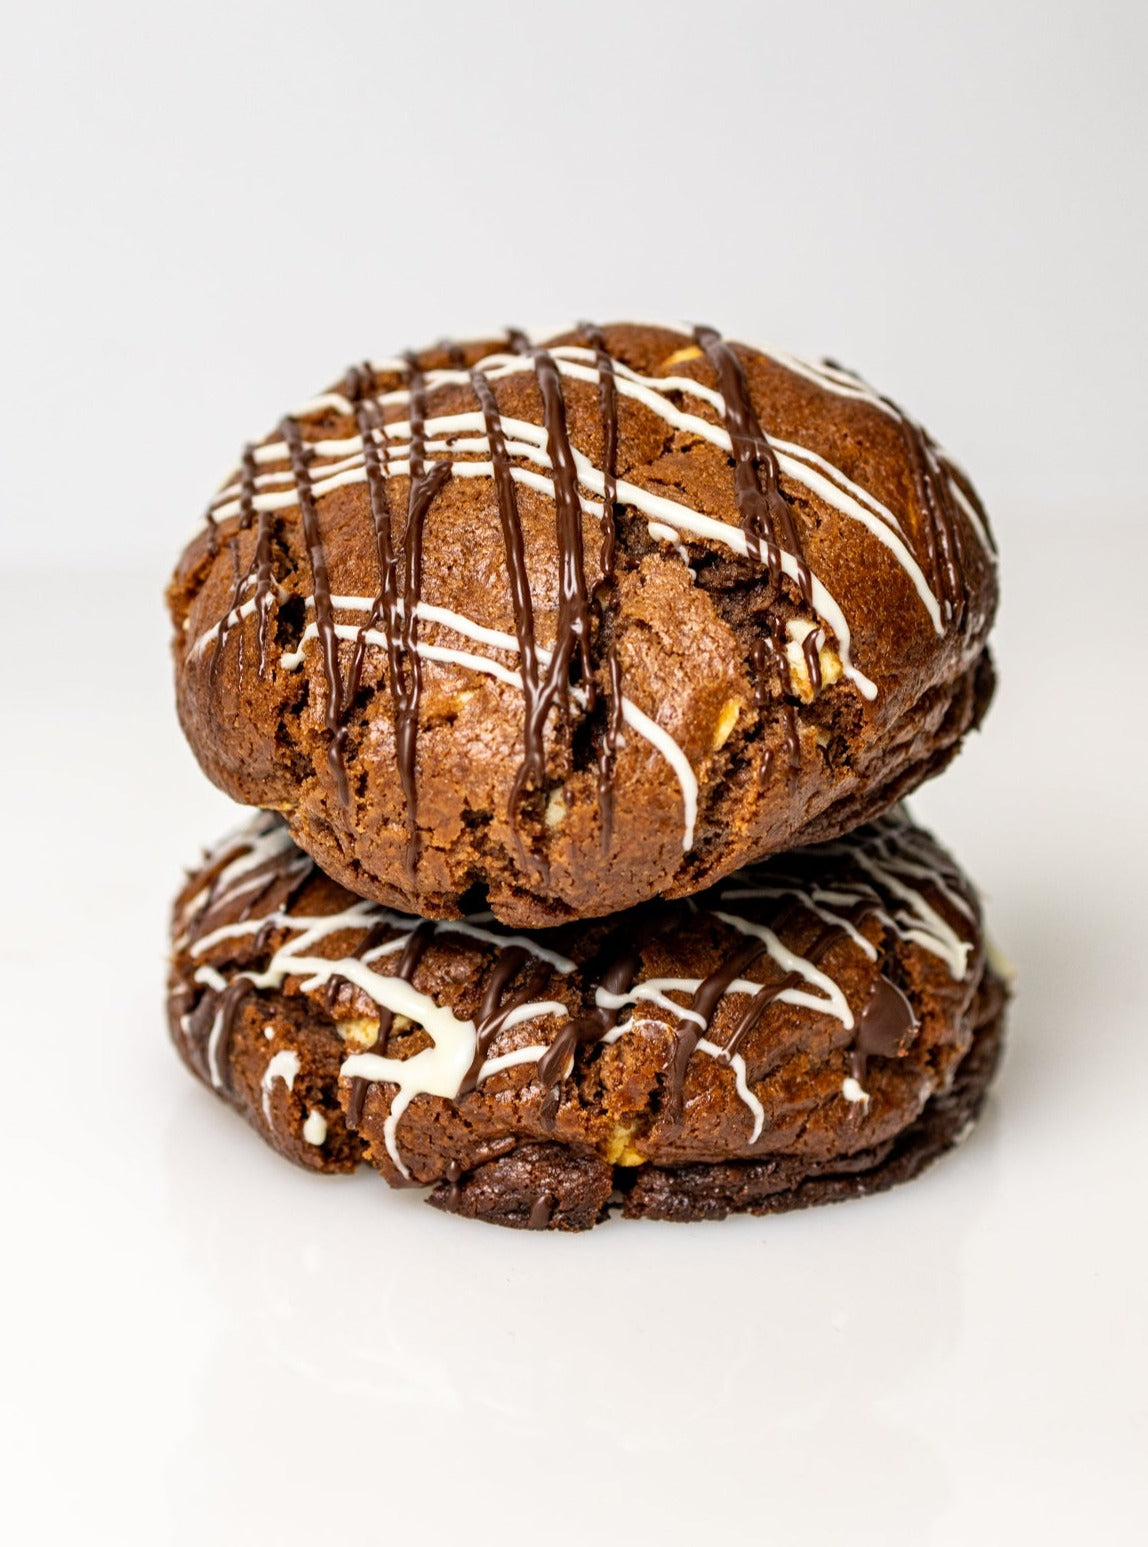 Triple Choc- BIGG Brownies & THICC Cookies - New York Style Cookies